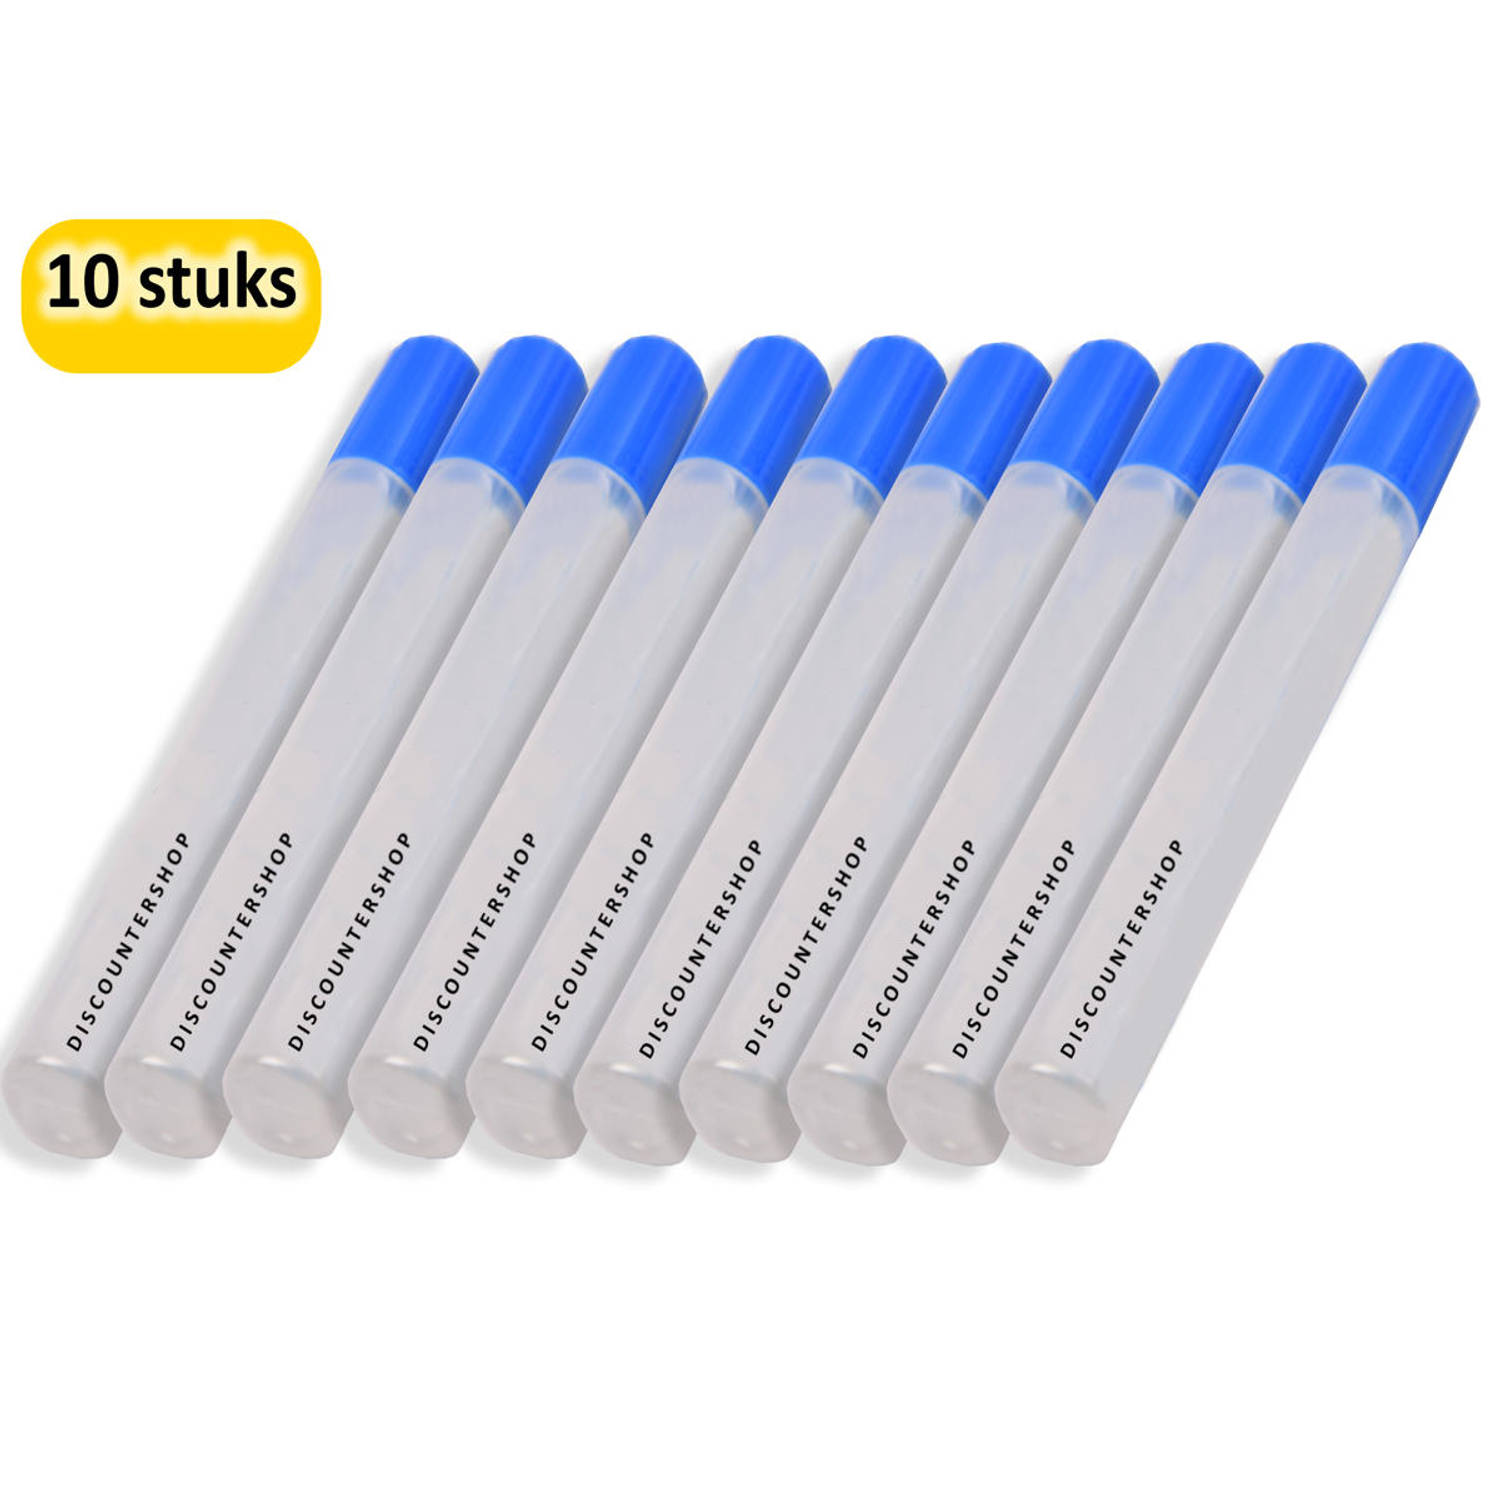 Hobbylijm Glue Pen 50 Gram - Pakket van 10 Stuks - Voor Precisiewerk en Handige Lijmtoepassingen